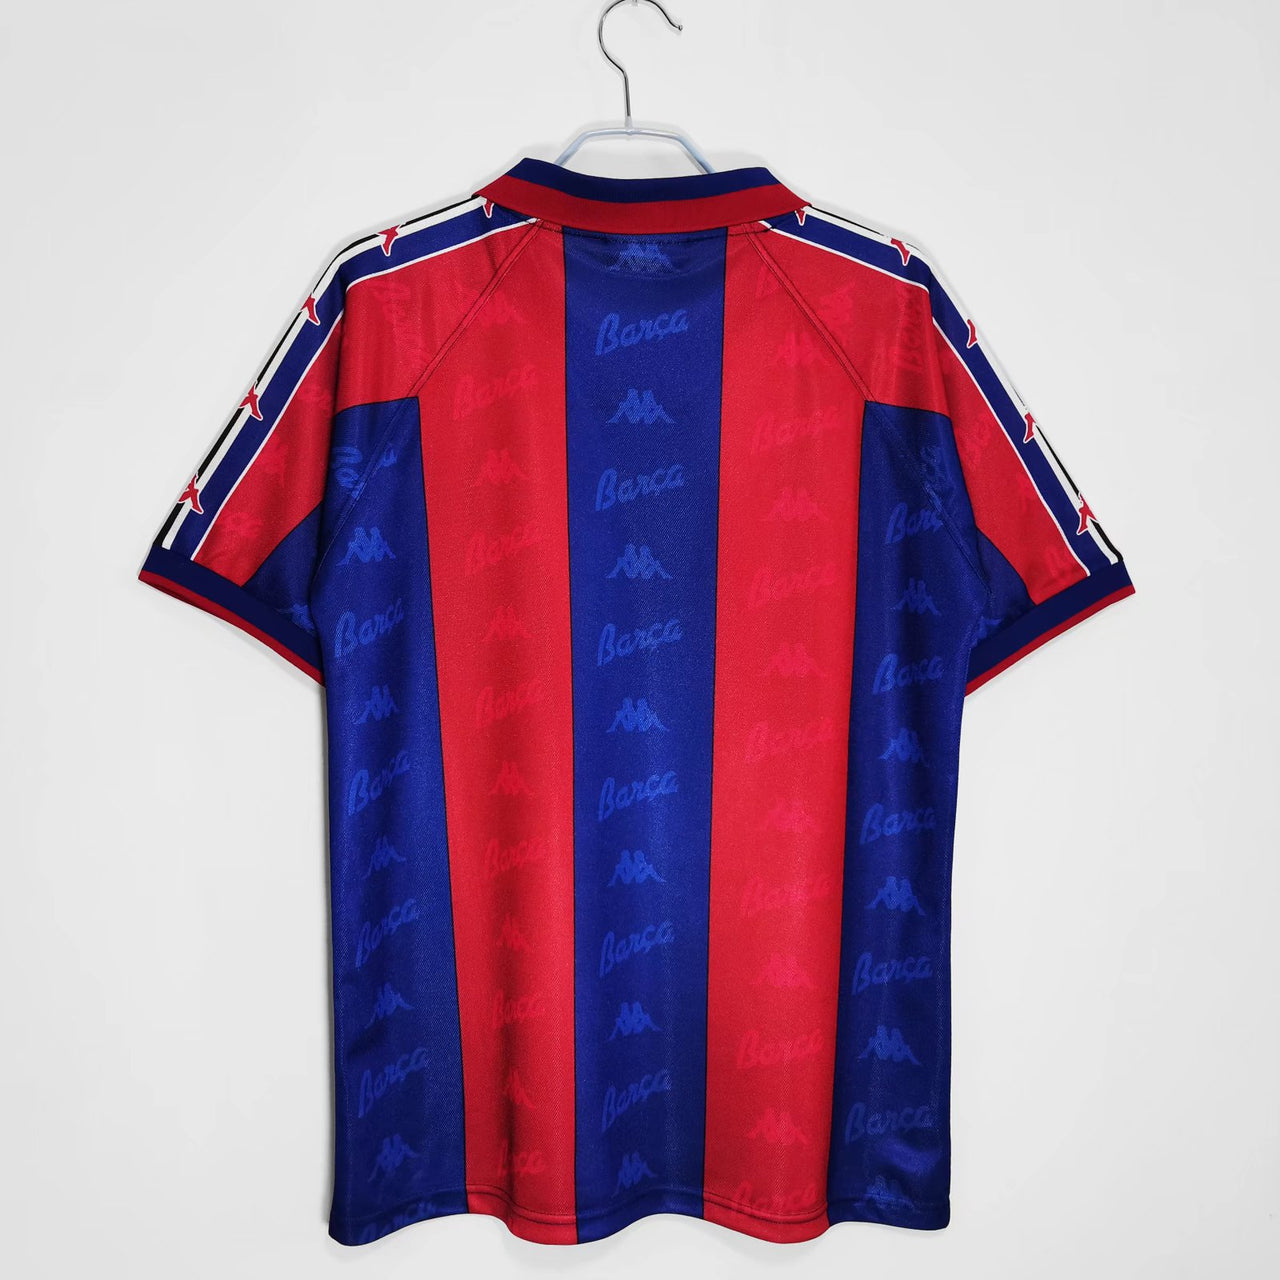 Barcelona 1995/1997 Home Vintage short slave Football jersey